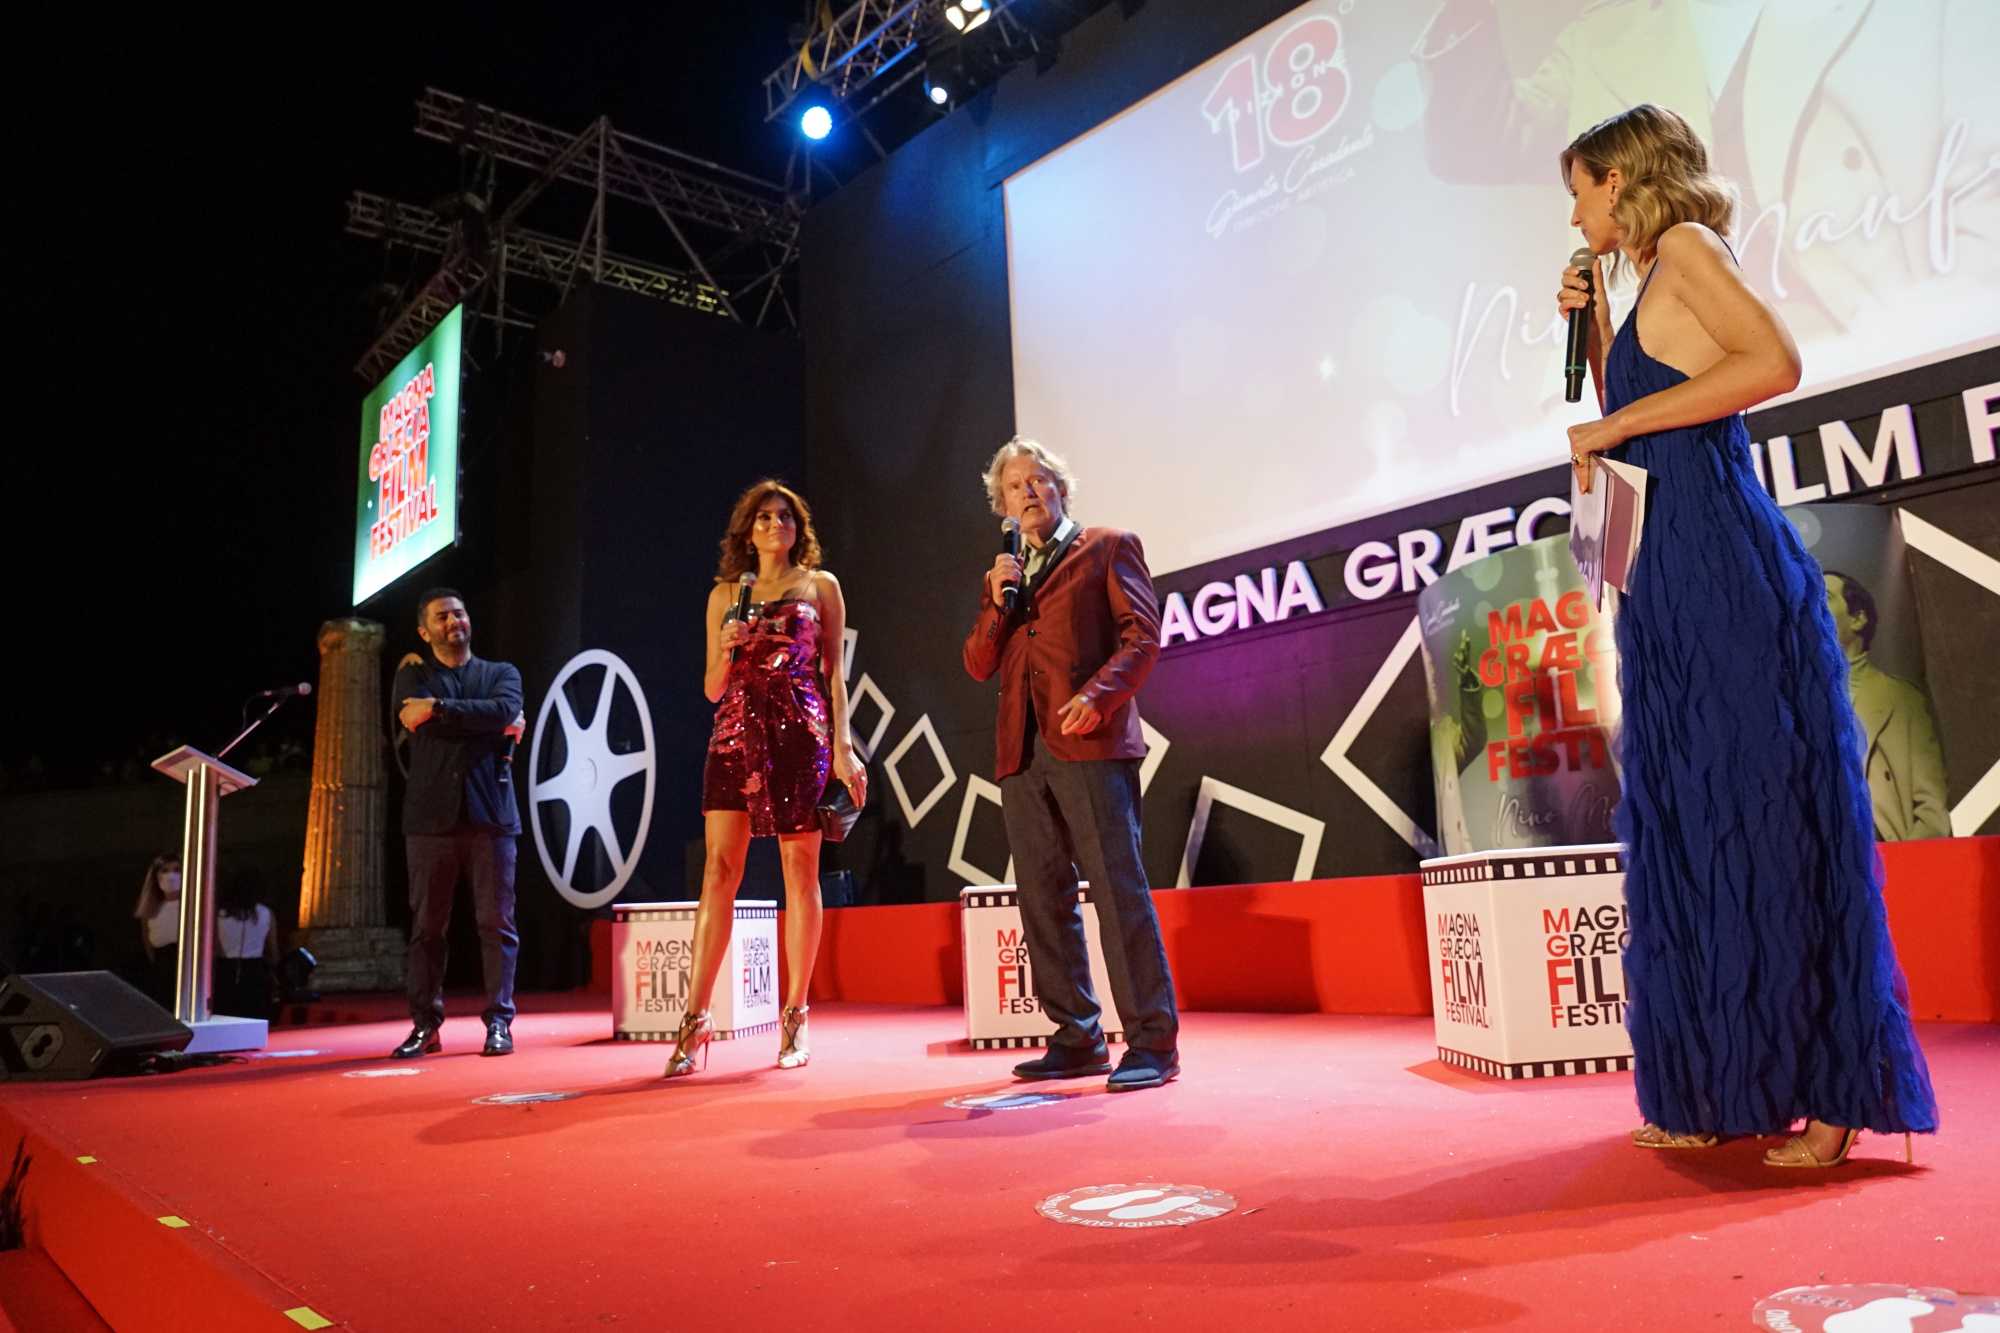 Magna Graecia Film Festival: Lillo racconta la fiaba all'italiana di "tutti per Uma" Foto e Video